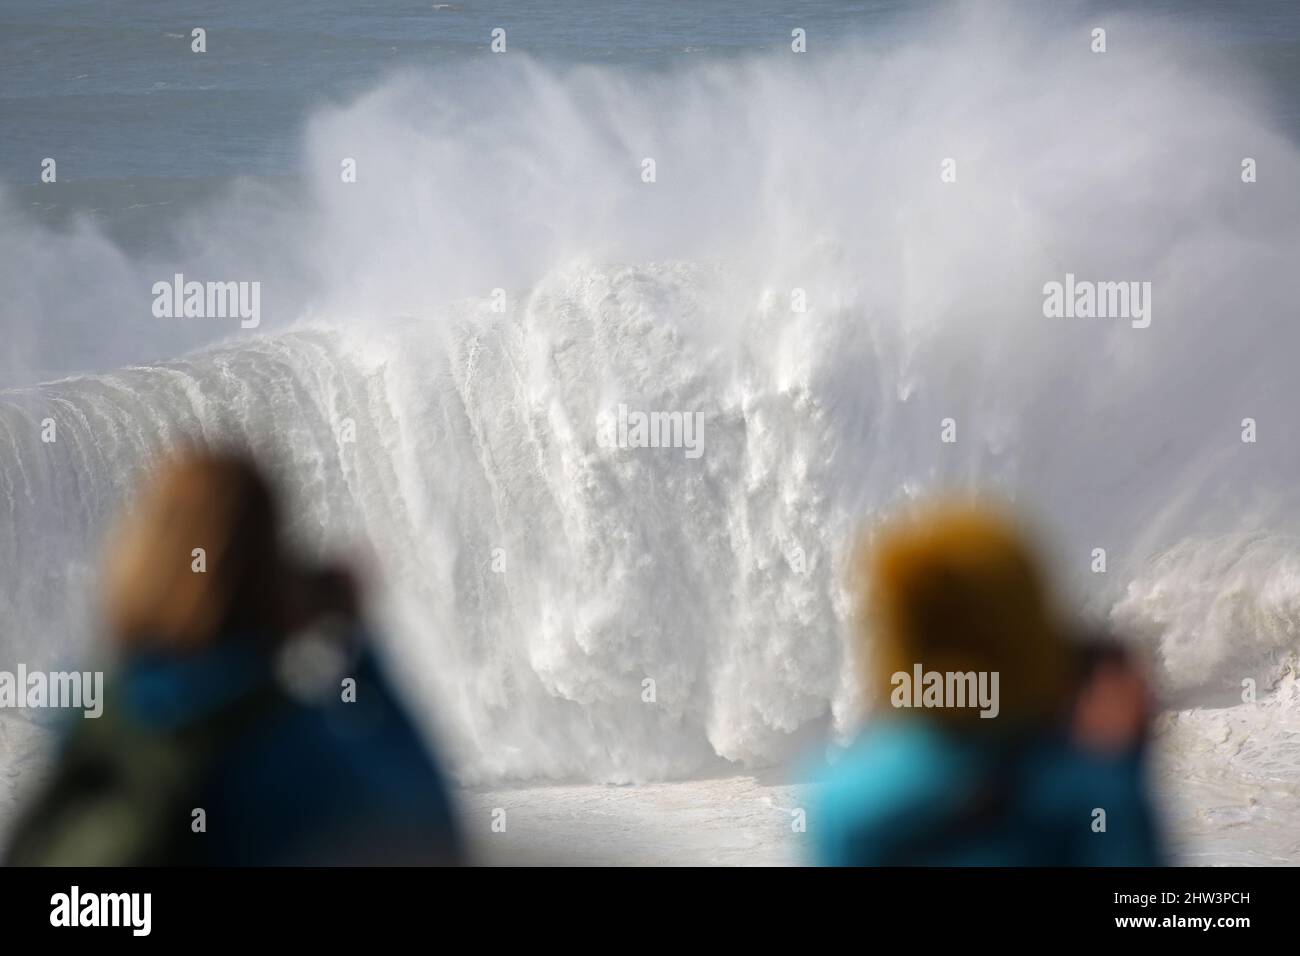 Une vague géante se brisant tandis que deux spectateurs féminins regardent et photographient en toute émerveillement. Praia do Norte, Nazaré, Portugal. Banque D'Images